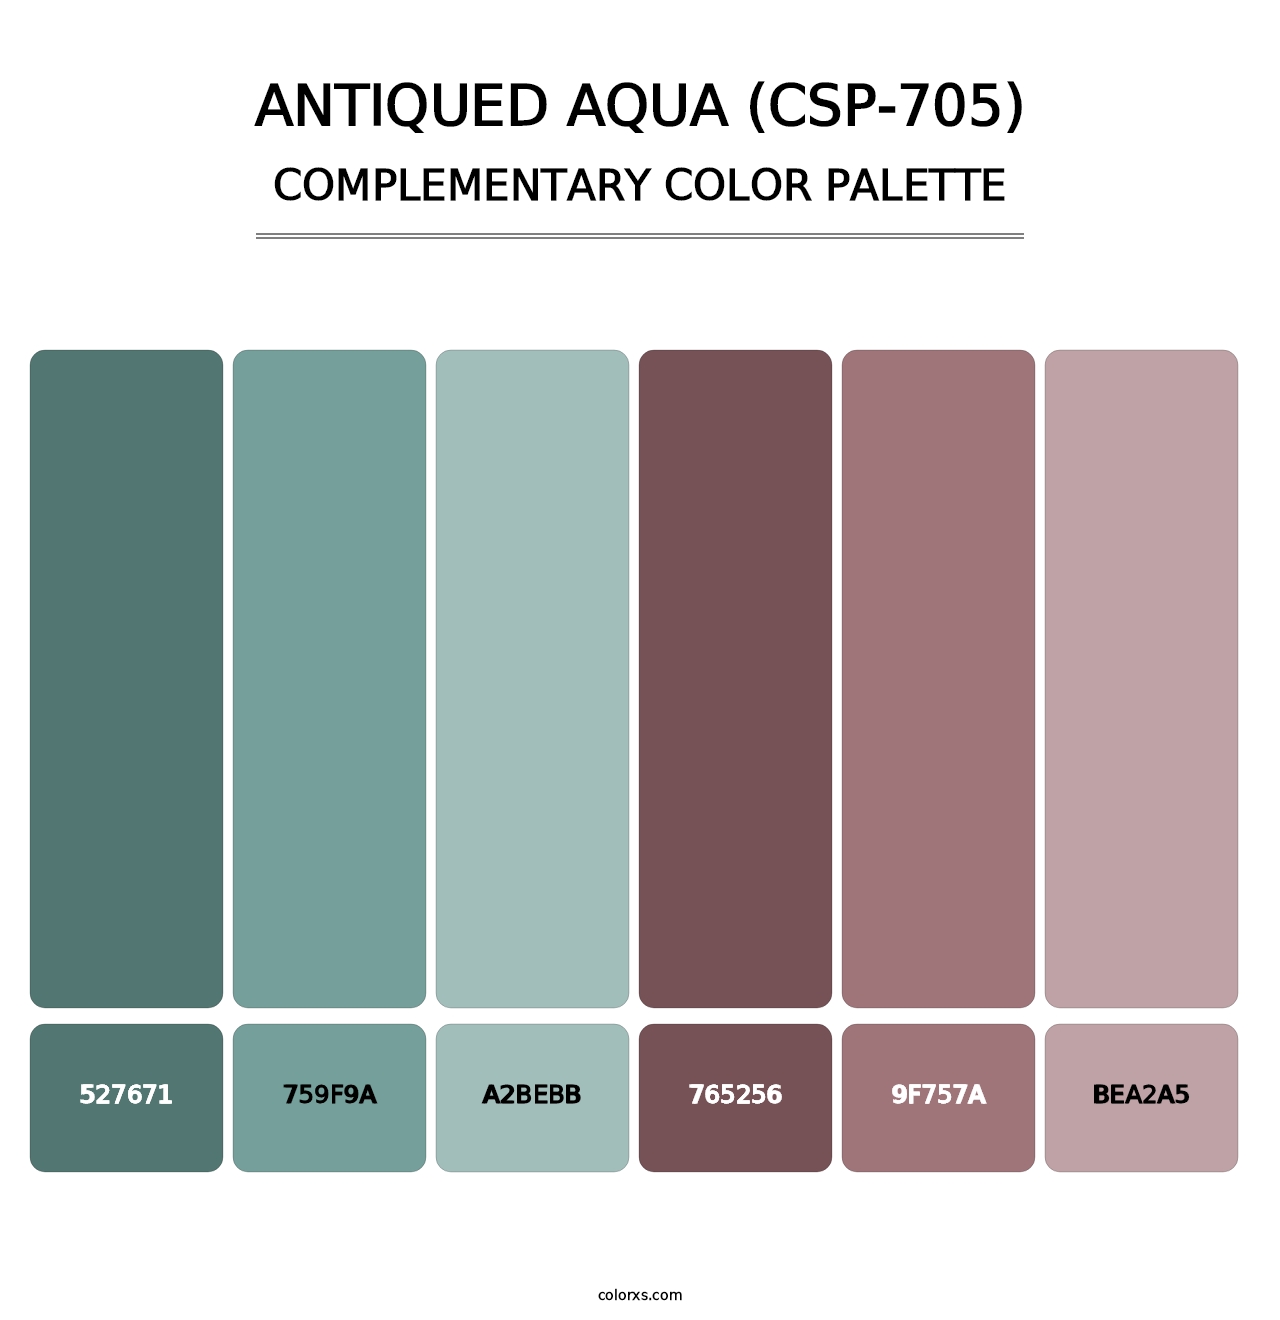 Antiqued Aqua (CSP-705) - Complementary Color Palette